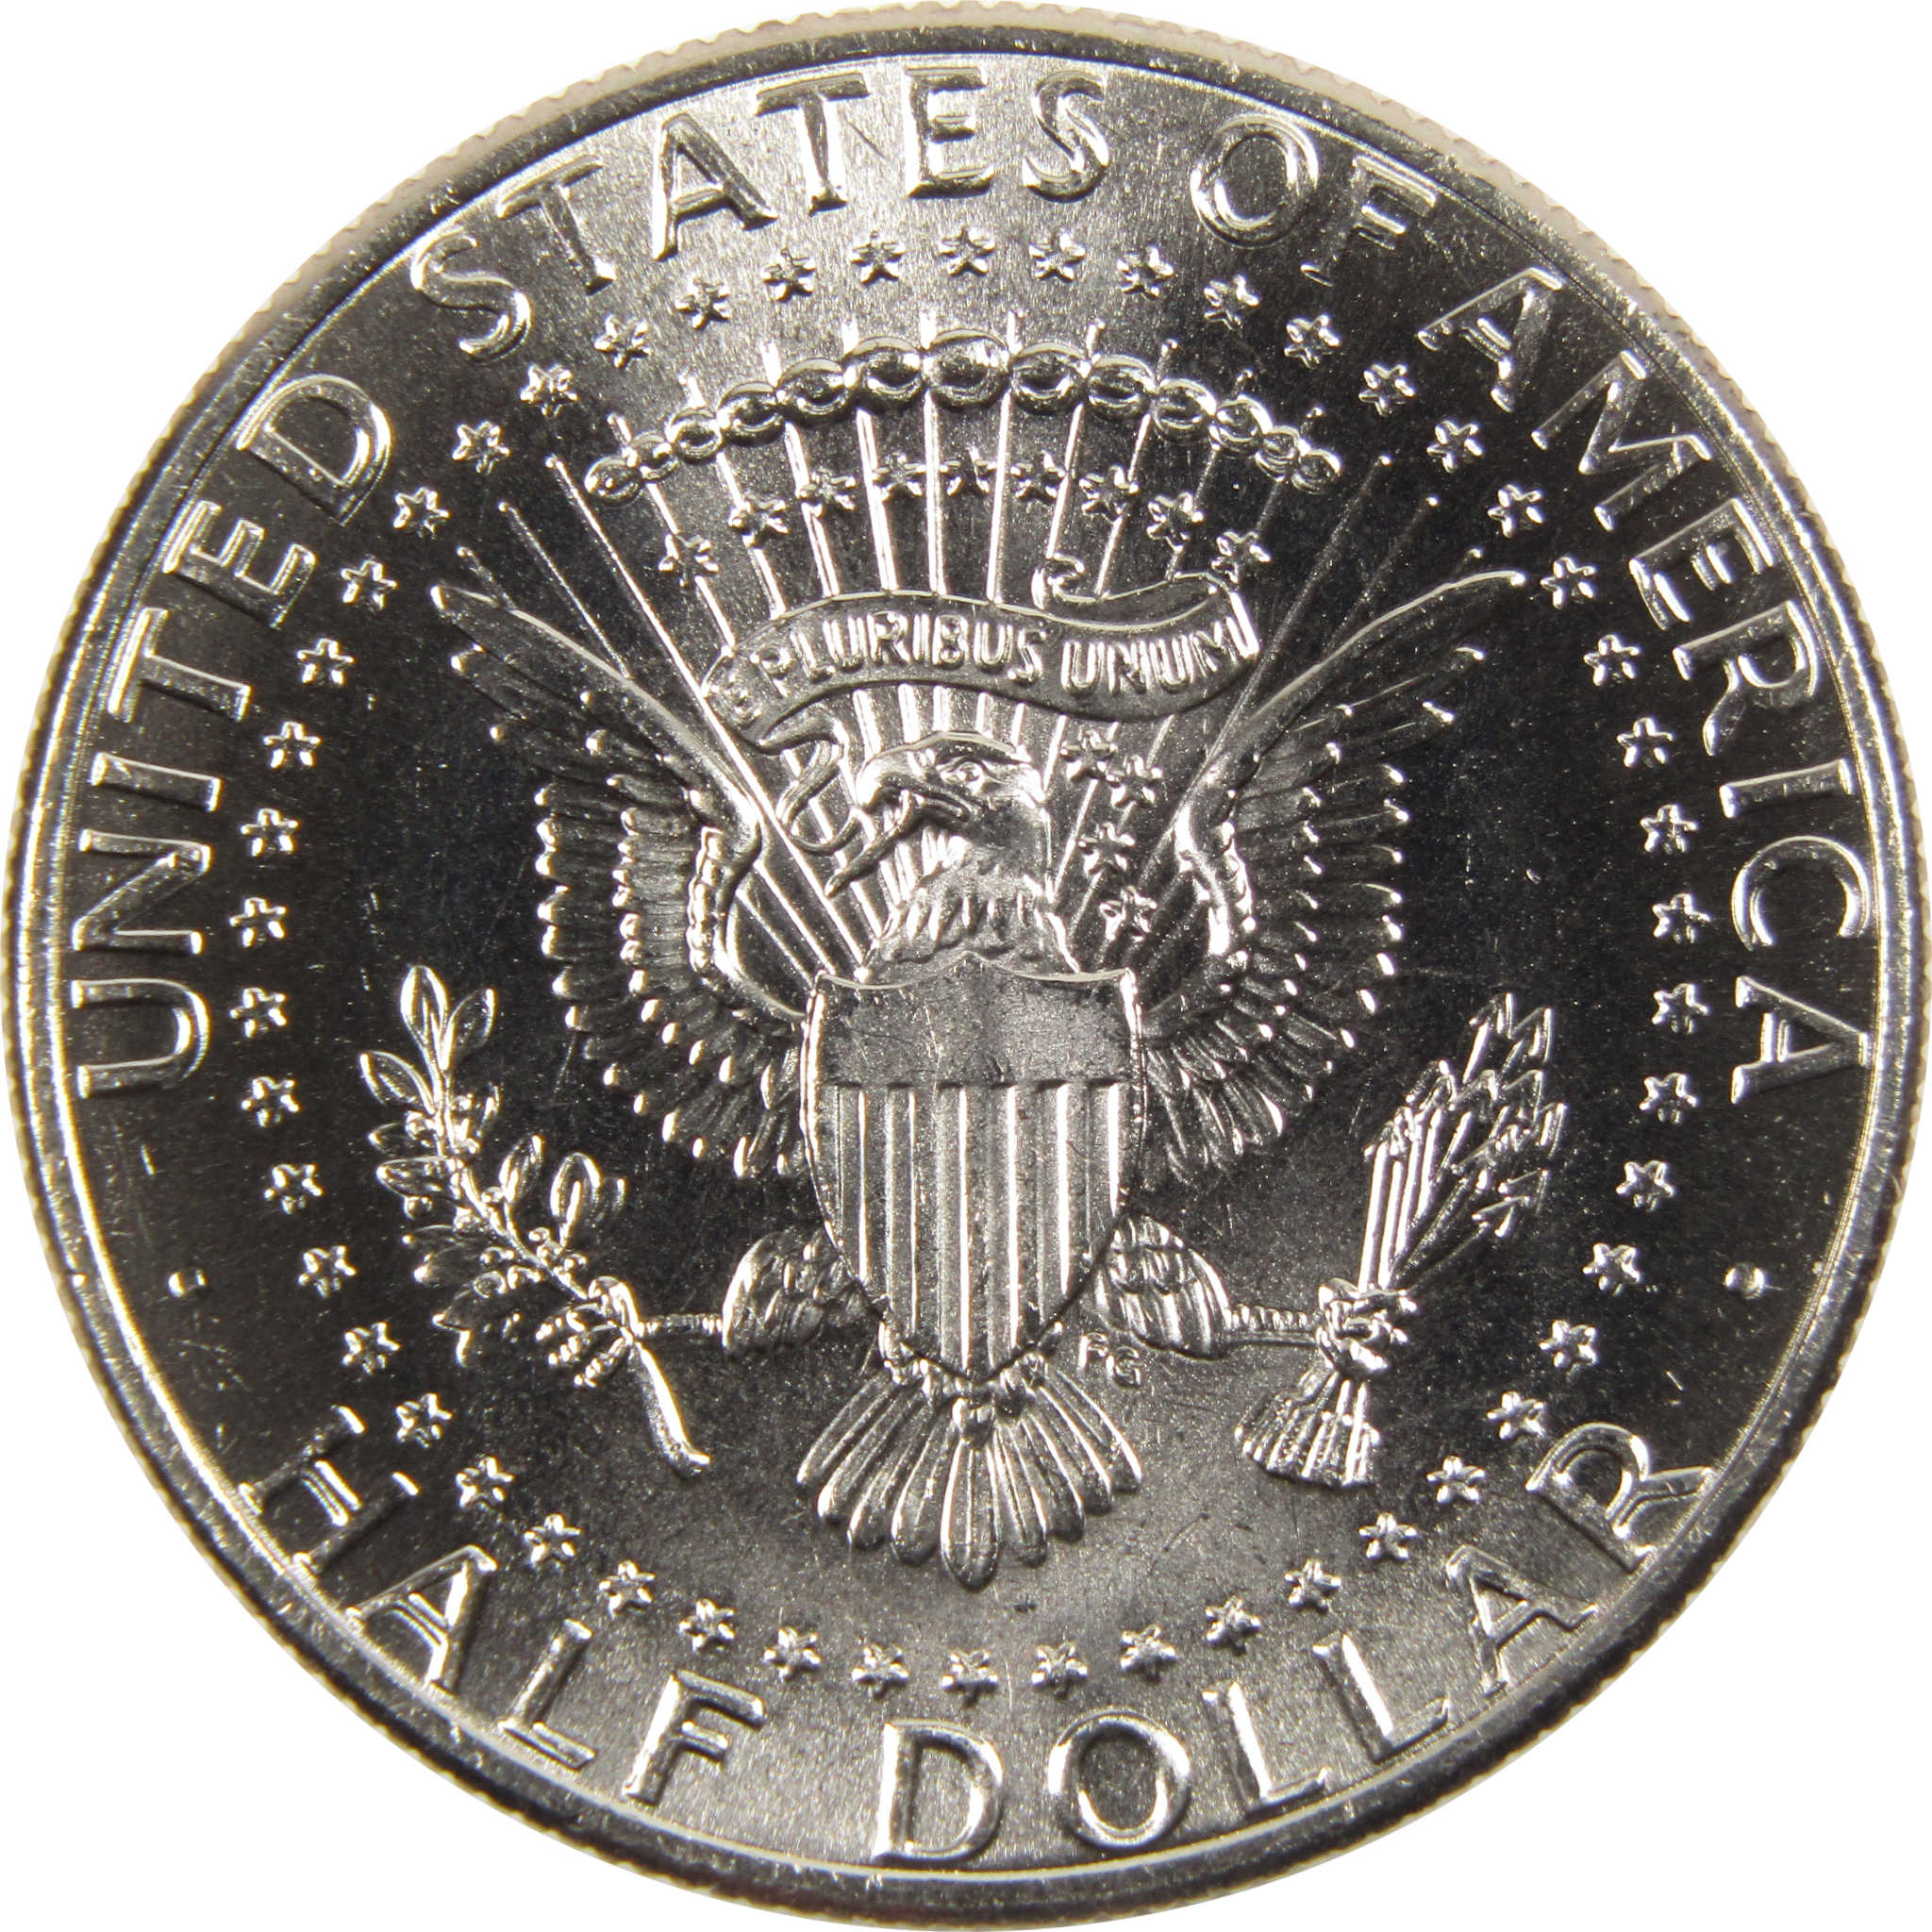 2022 D Kennedy Half Dollar BU Uncirculated Clad 50c Coin